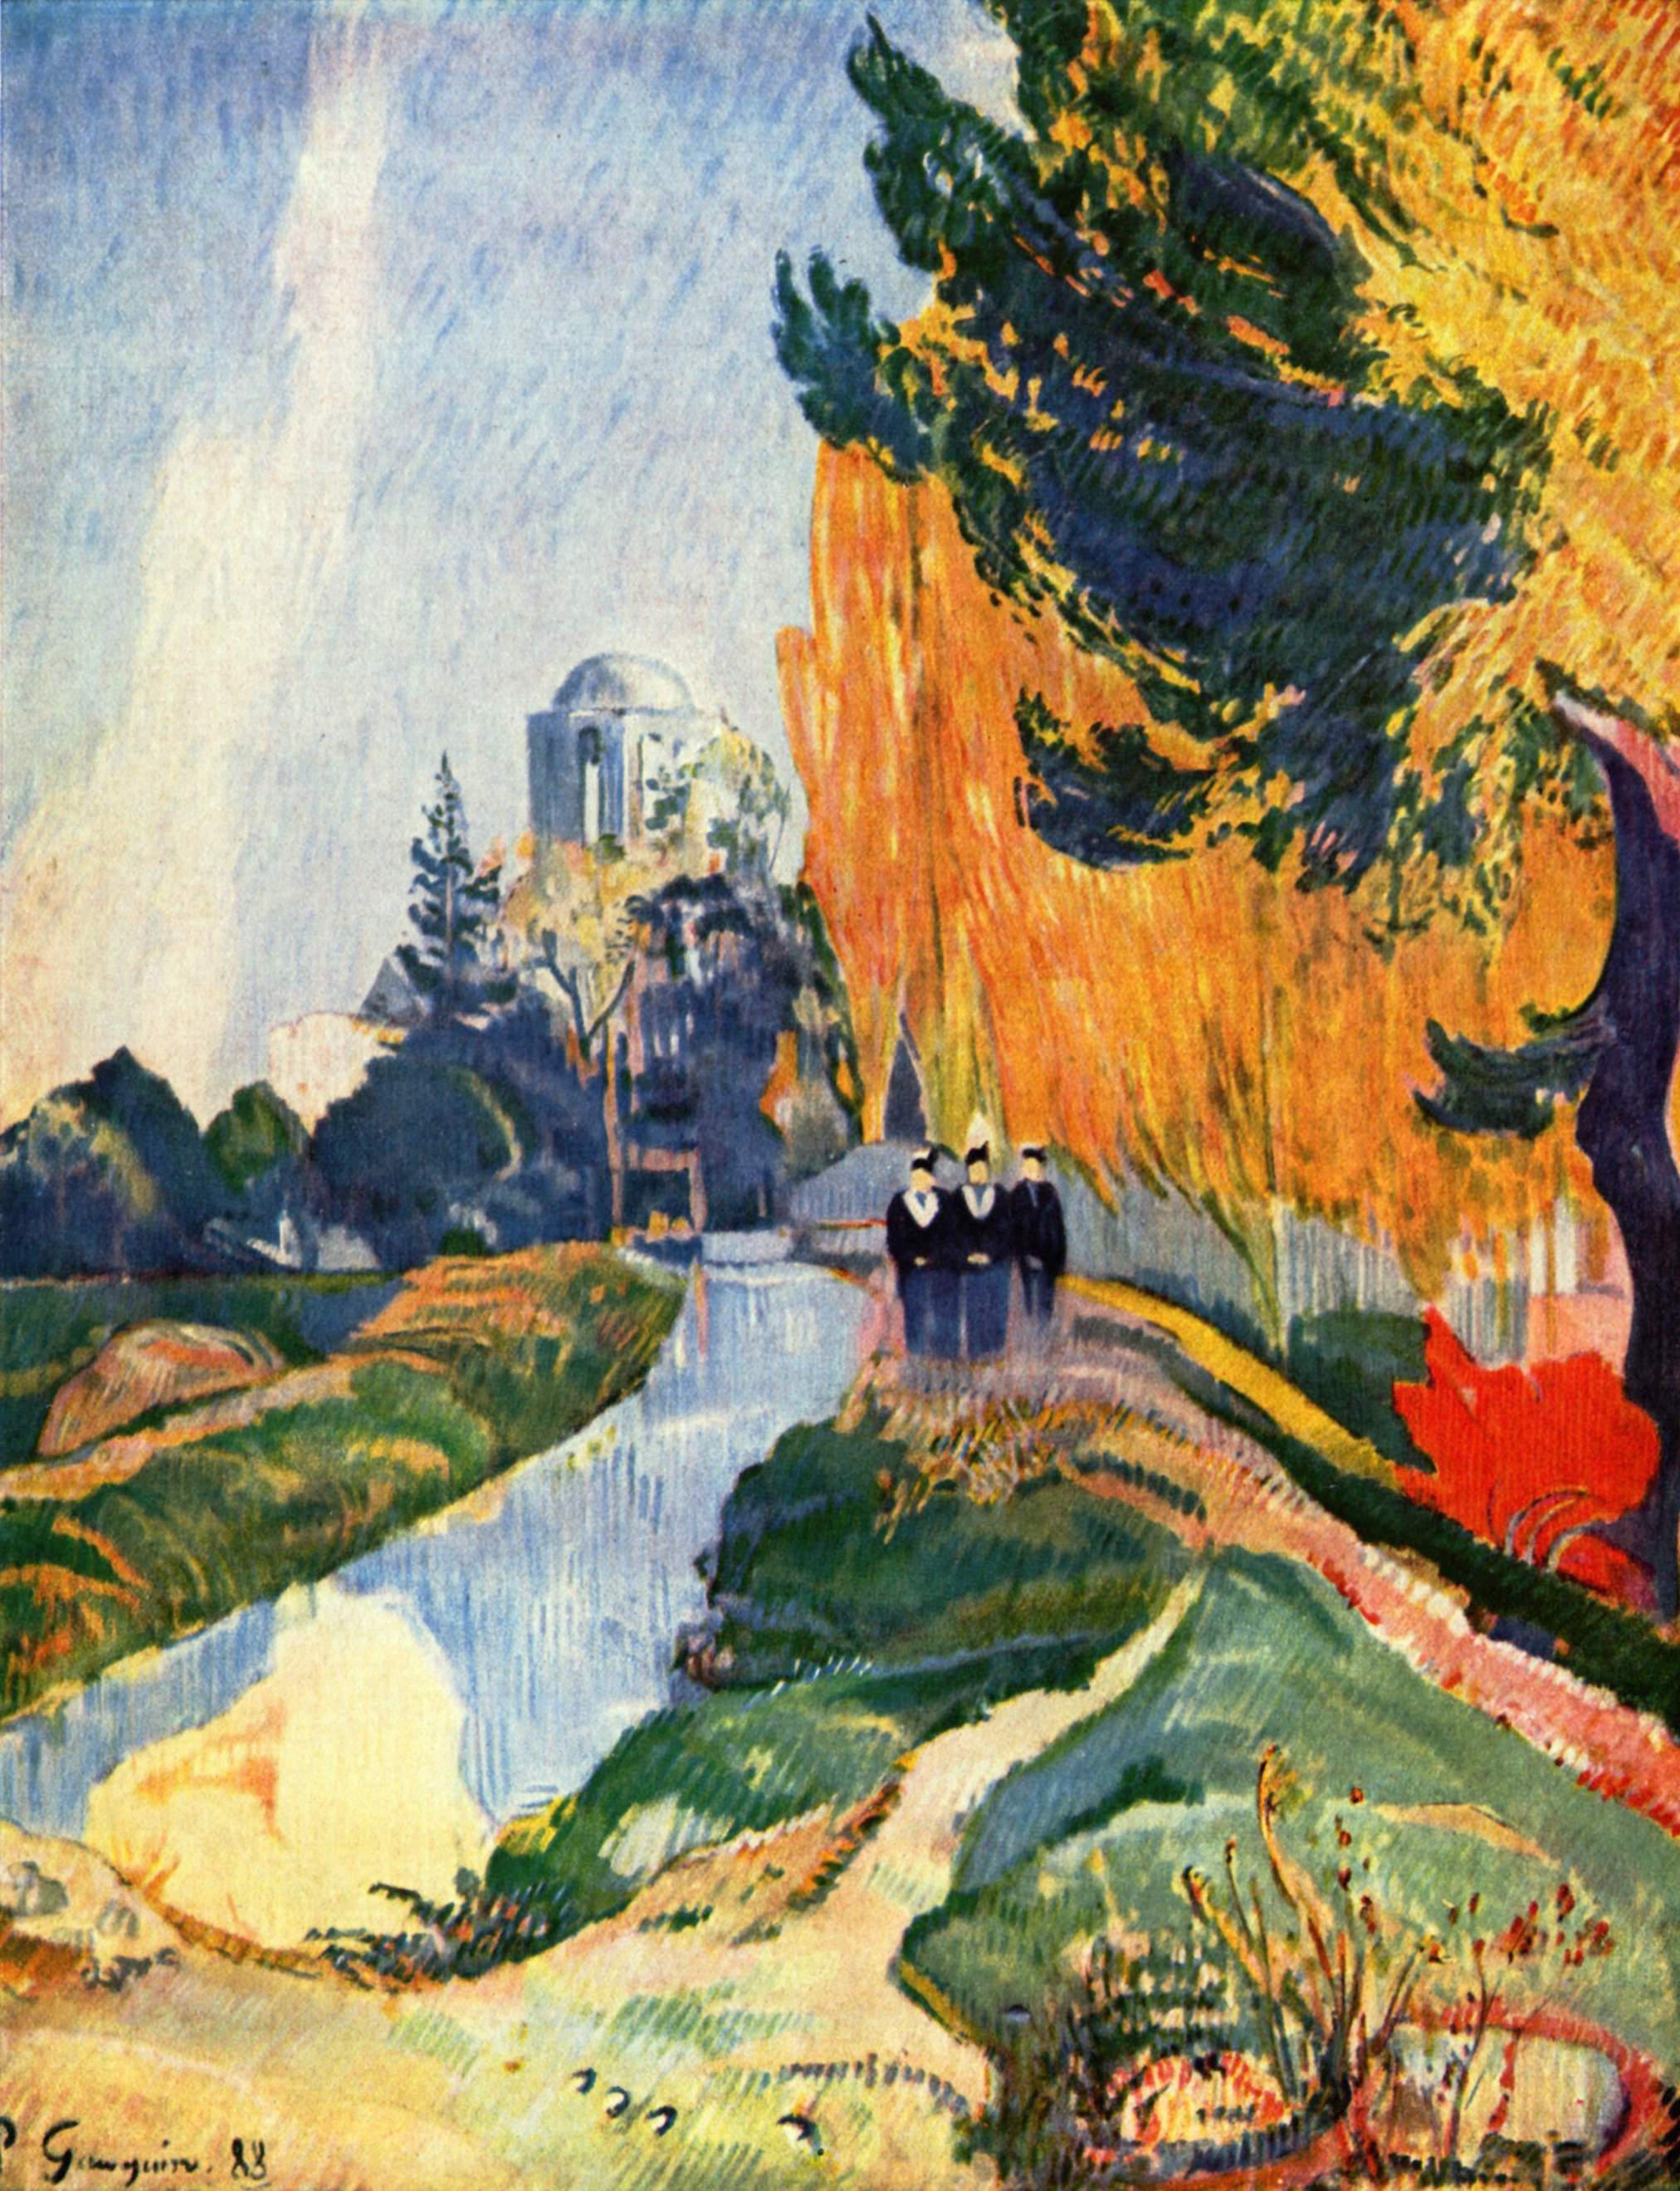 Les Alyscamps by Paul Gauguin - 1888 - 91.6 × 72.5 cm Musée d'Orsay